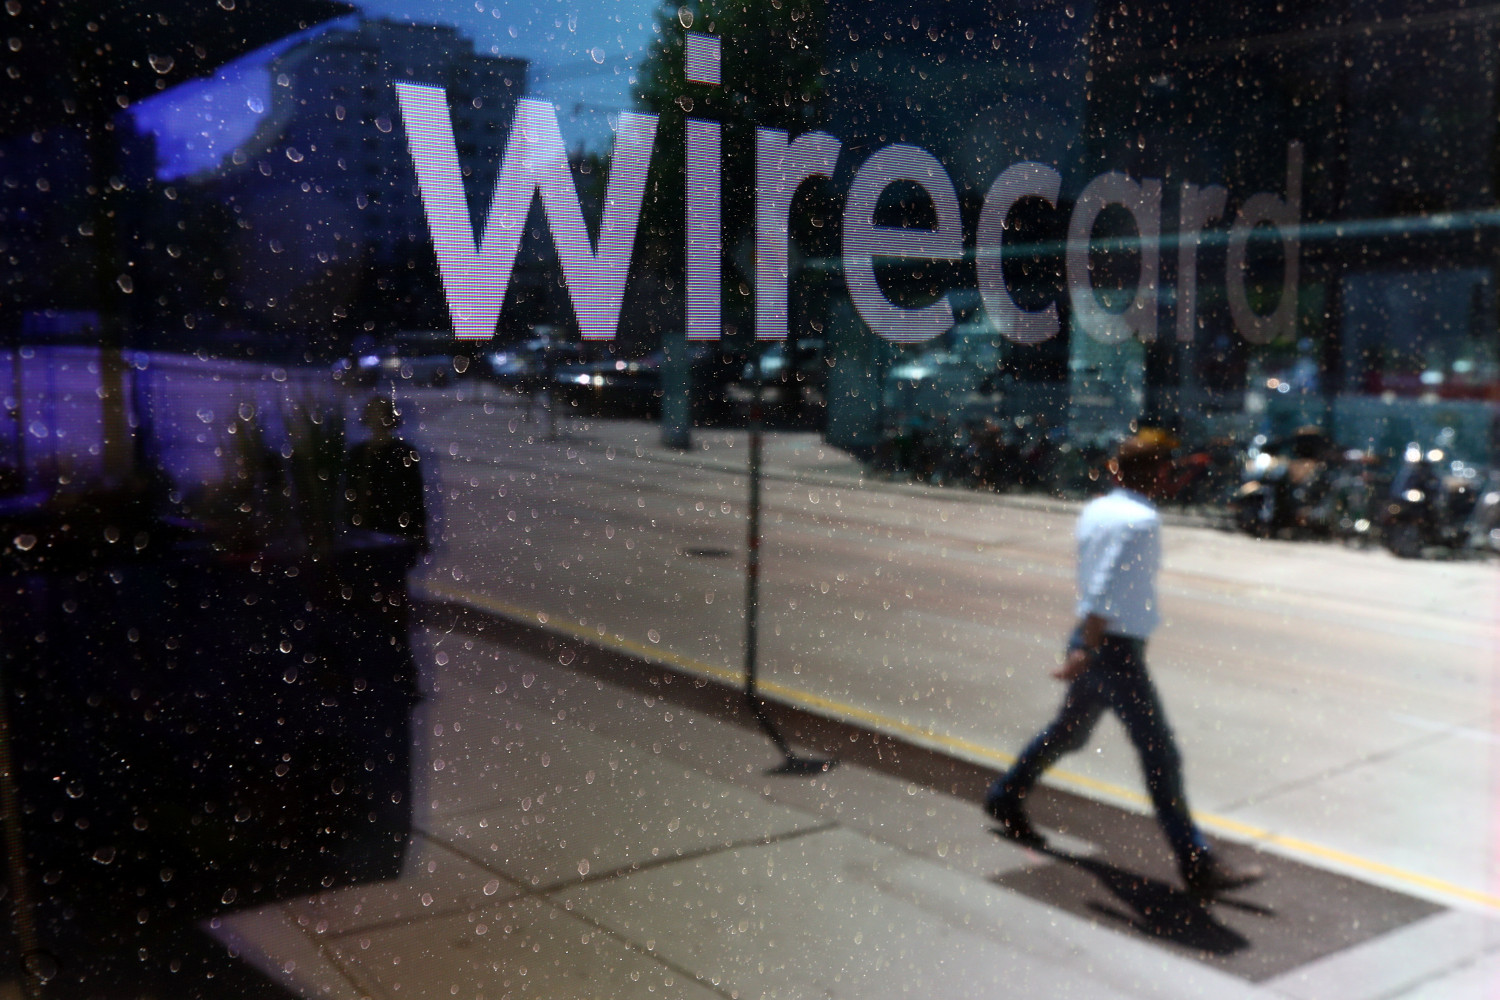 wirecard licencie plus de la moitie des employes qui restaient en allemagne 20210412184852 